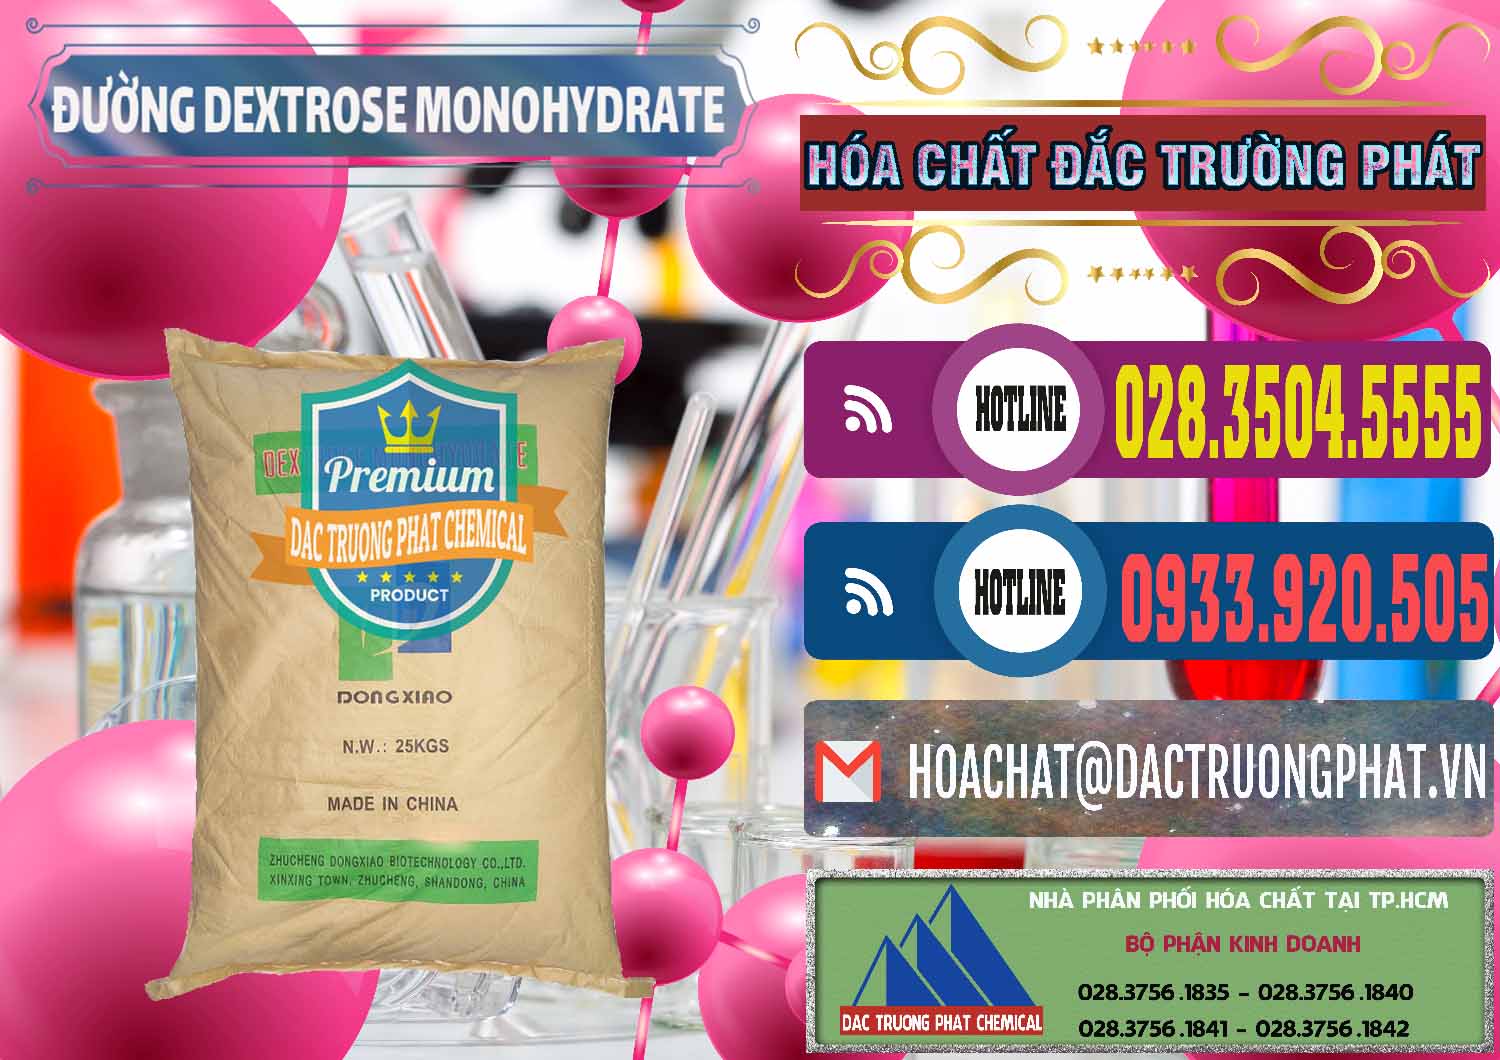 Cty chuyên nhập khẩu - bán Đường Dextrose Monohydrate Food Grade Dongxiao Trung Quốc China - 0063 - Chuyên cung cấp & phân phối hóa chất tại TP.HCM - muabanhoachat.com.vn